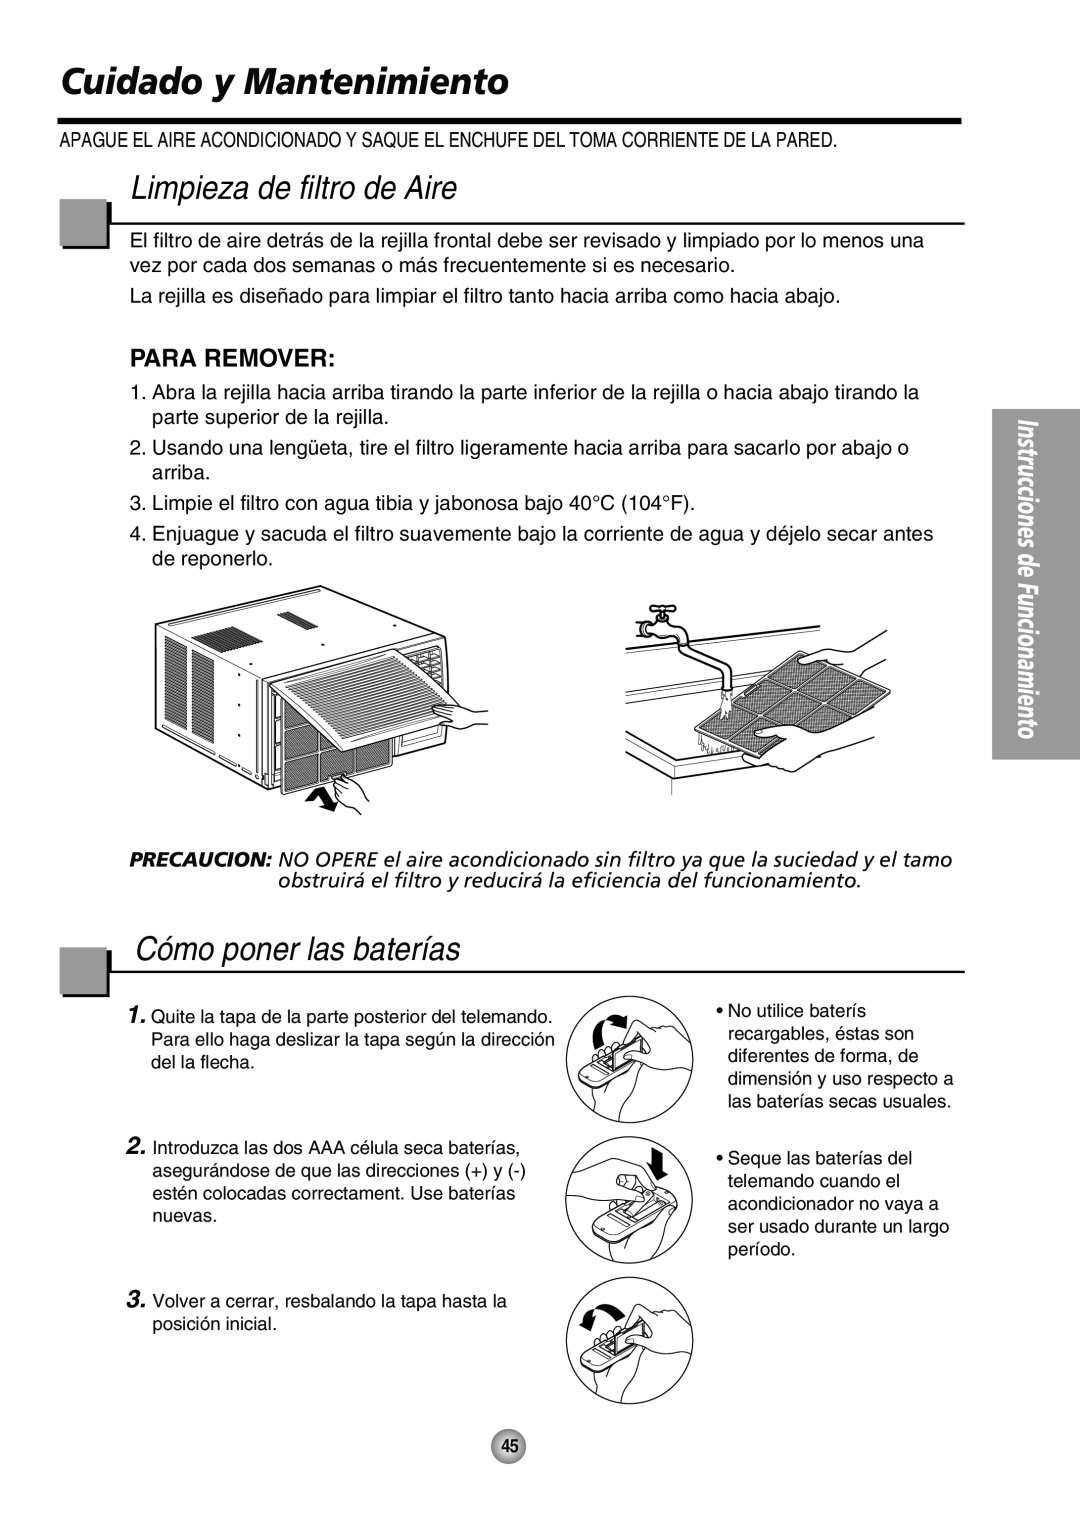 Panasonic CW-XC64HU manual Cuidado y Mantenimiento, Limpieza de filtro de Aire, Cómo poner las baterías, Para Remover 